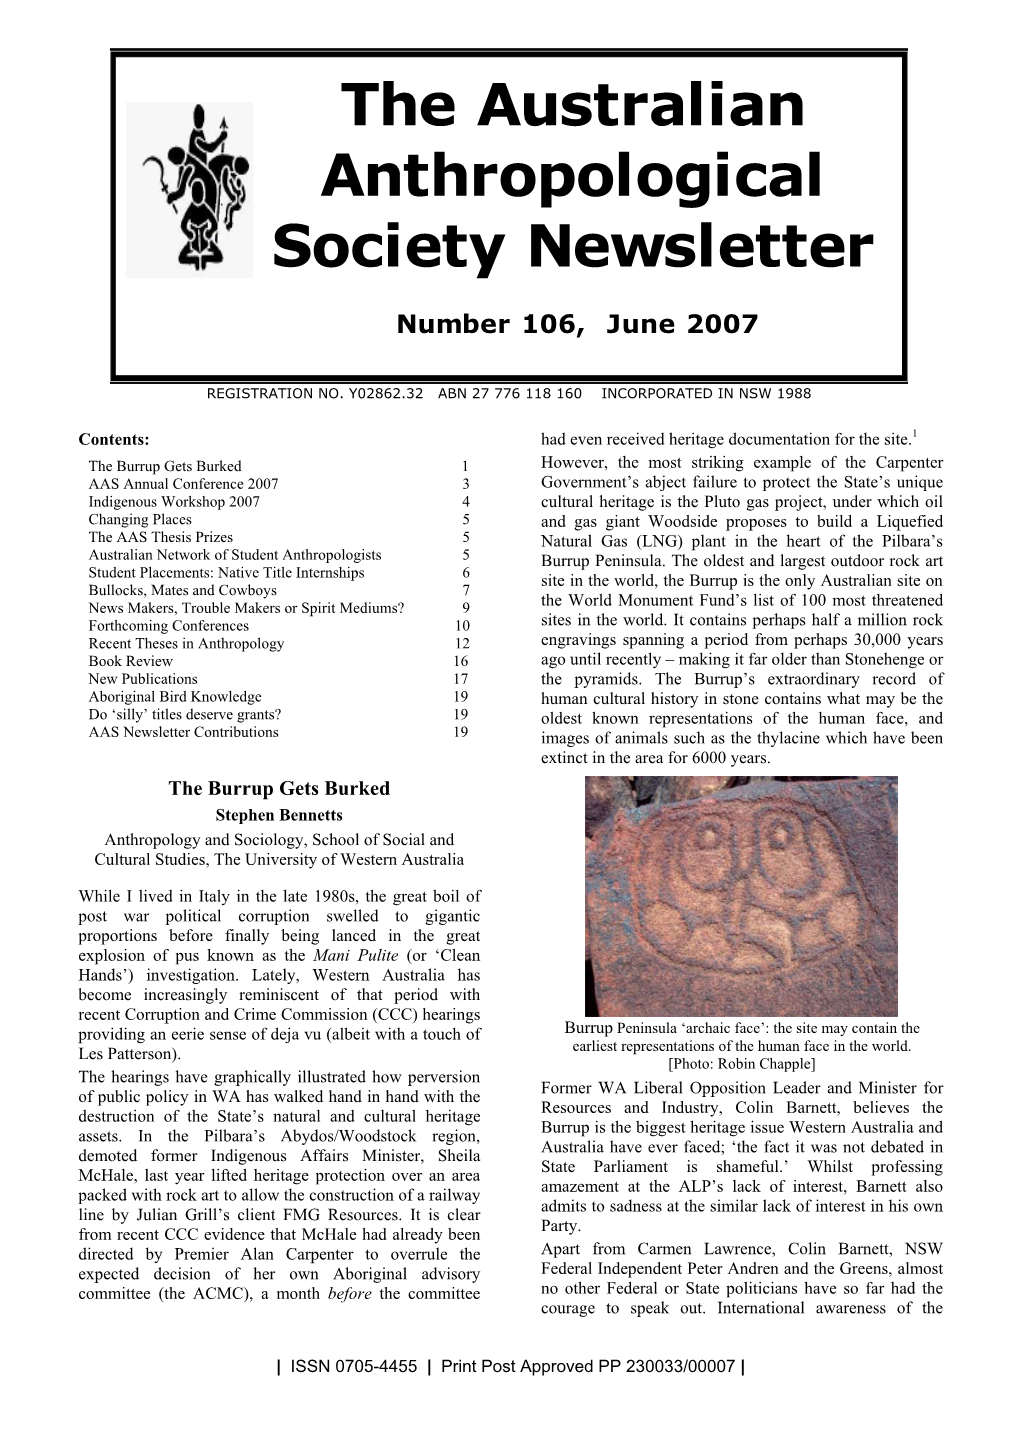 The Australian Anthropological Society Newsletter